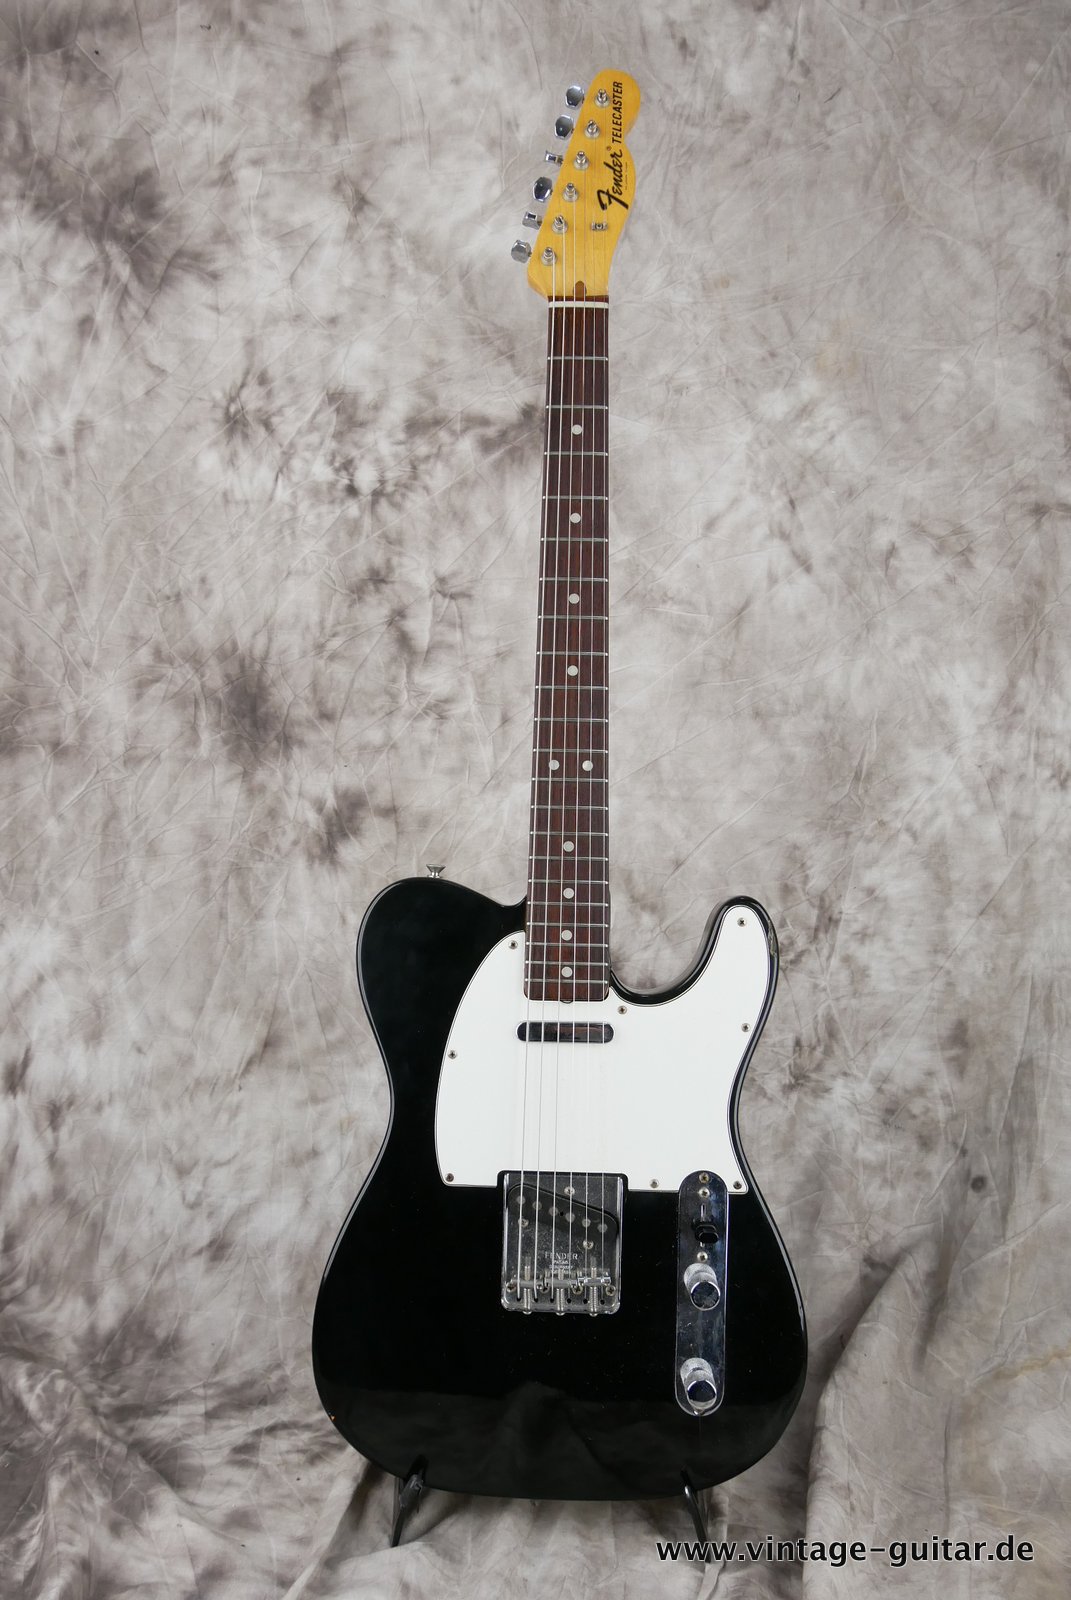 img/vintage/4840/Fender-Telecaster-1972-black-over-sunburst-001.JPG